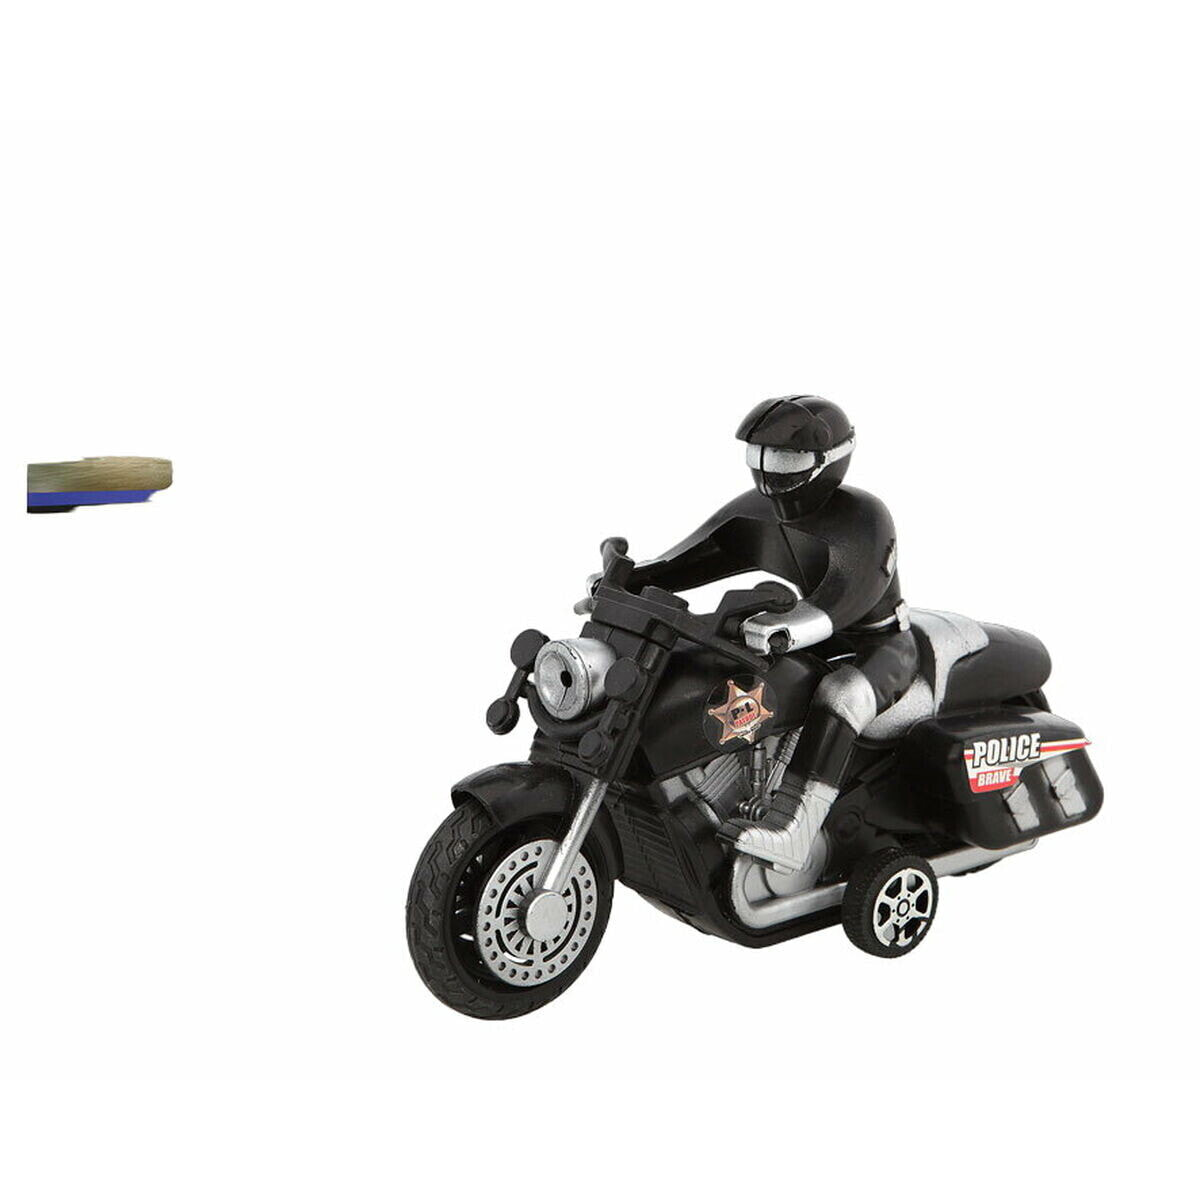 Police Motorbike 18 x 12 cm